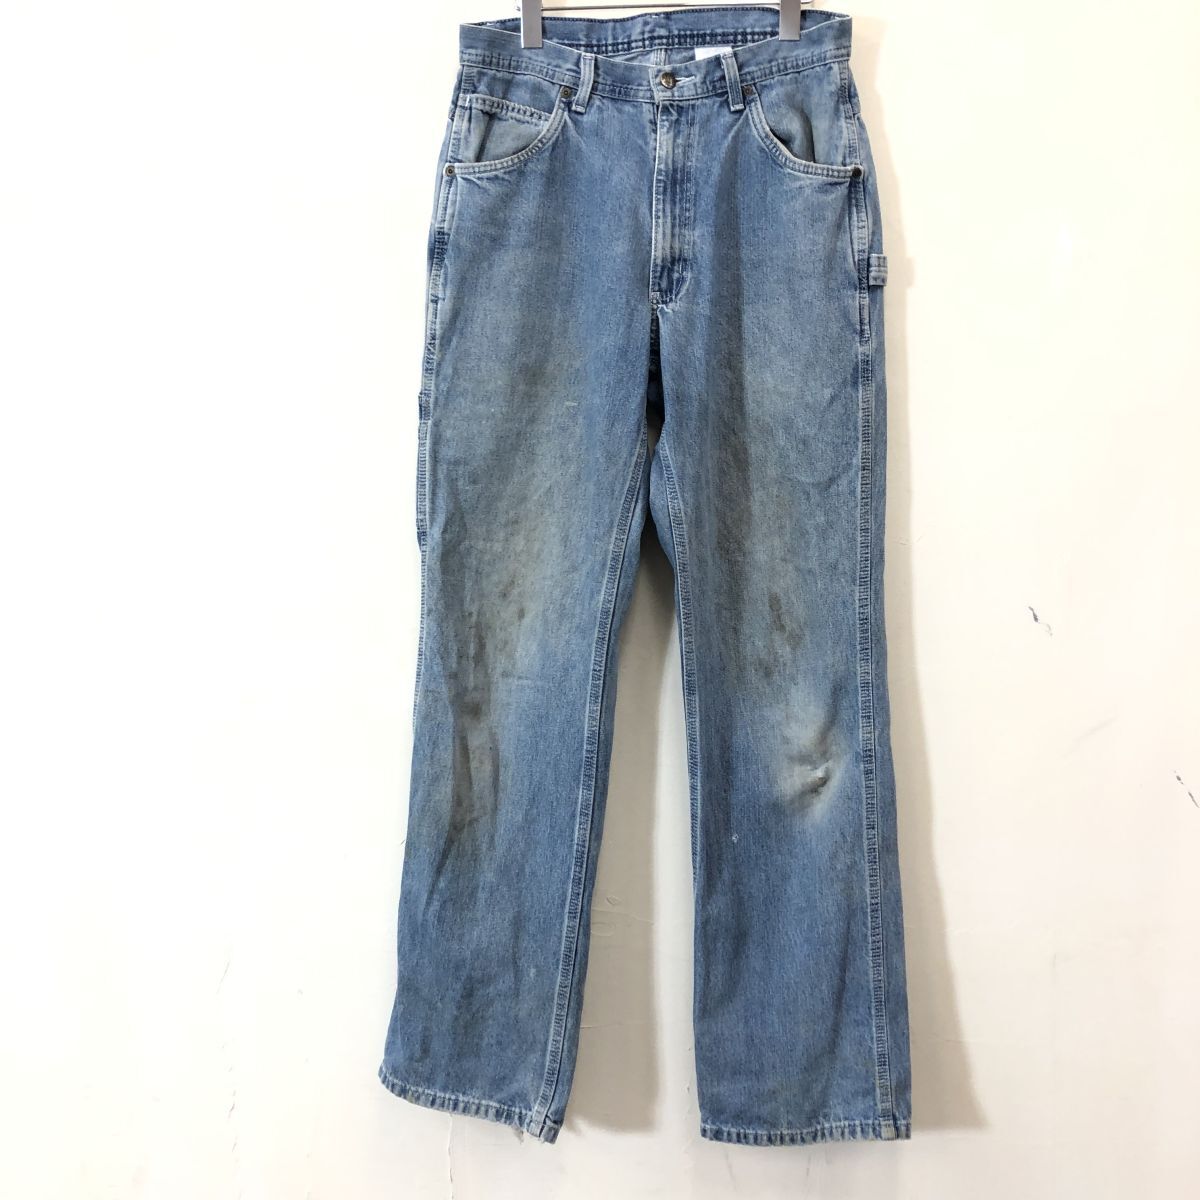 A1055-F◆ work jeans for KEY デニム ジーンズ ペインターパンツ ボトムス ◆ size32×34 コットン100 インディゴ 古着 メンズ_画像2